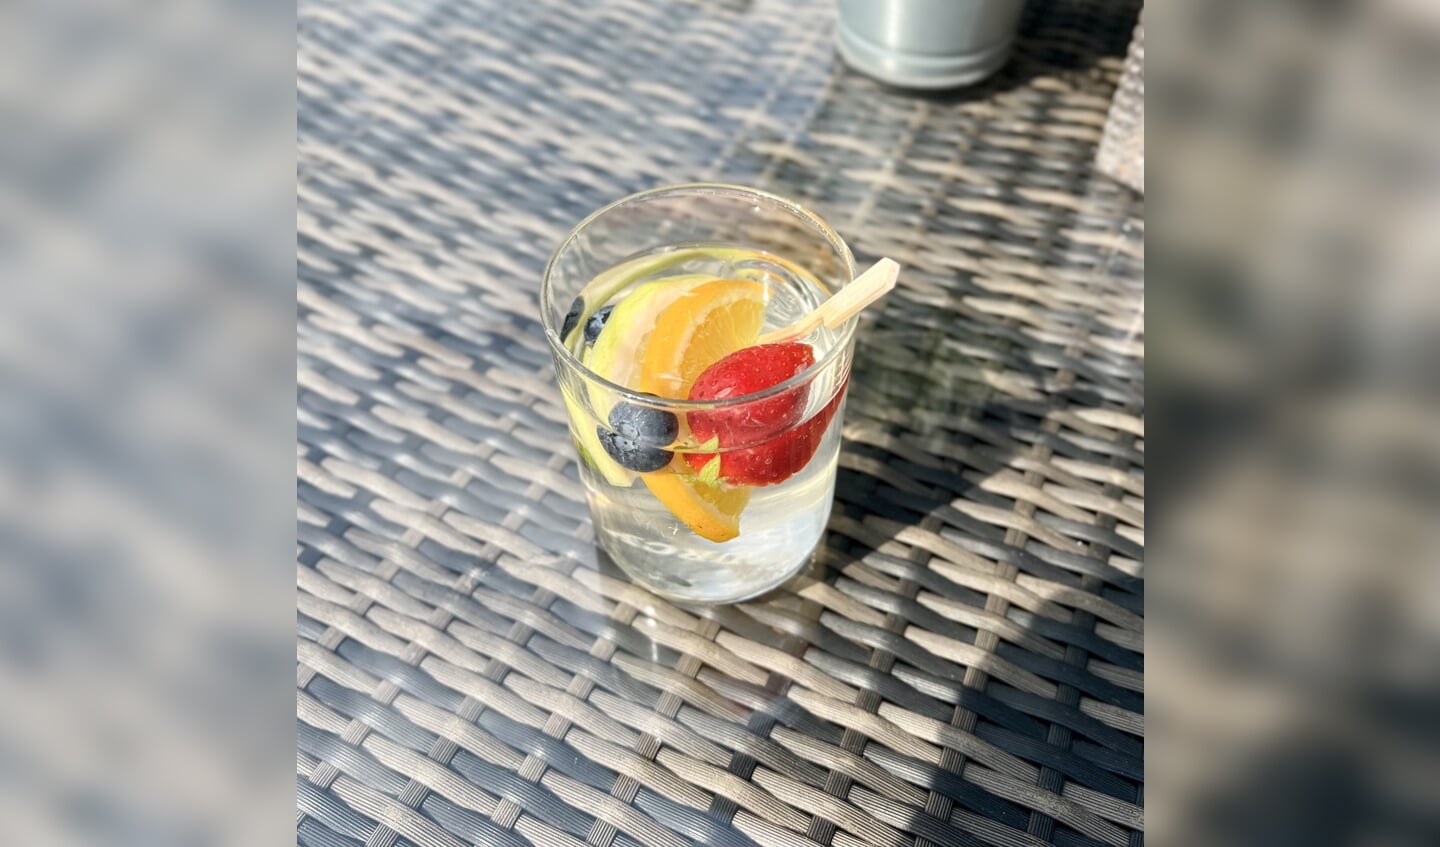 Elk glaasje water wordt opgemaakt als een mocktail met bijpassend ijs en fruit